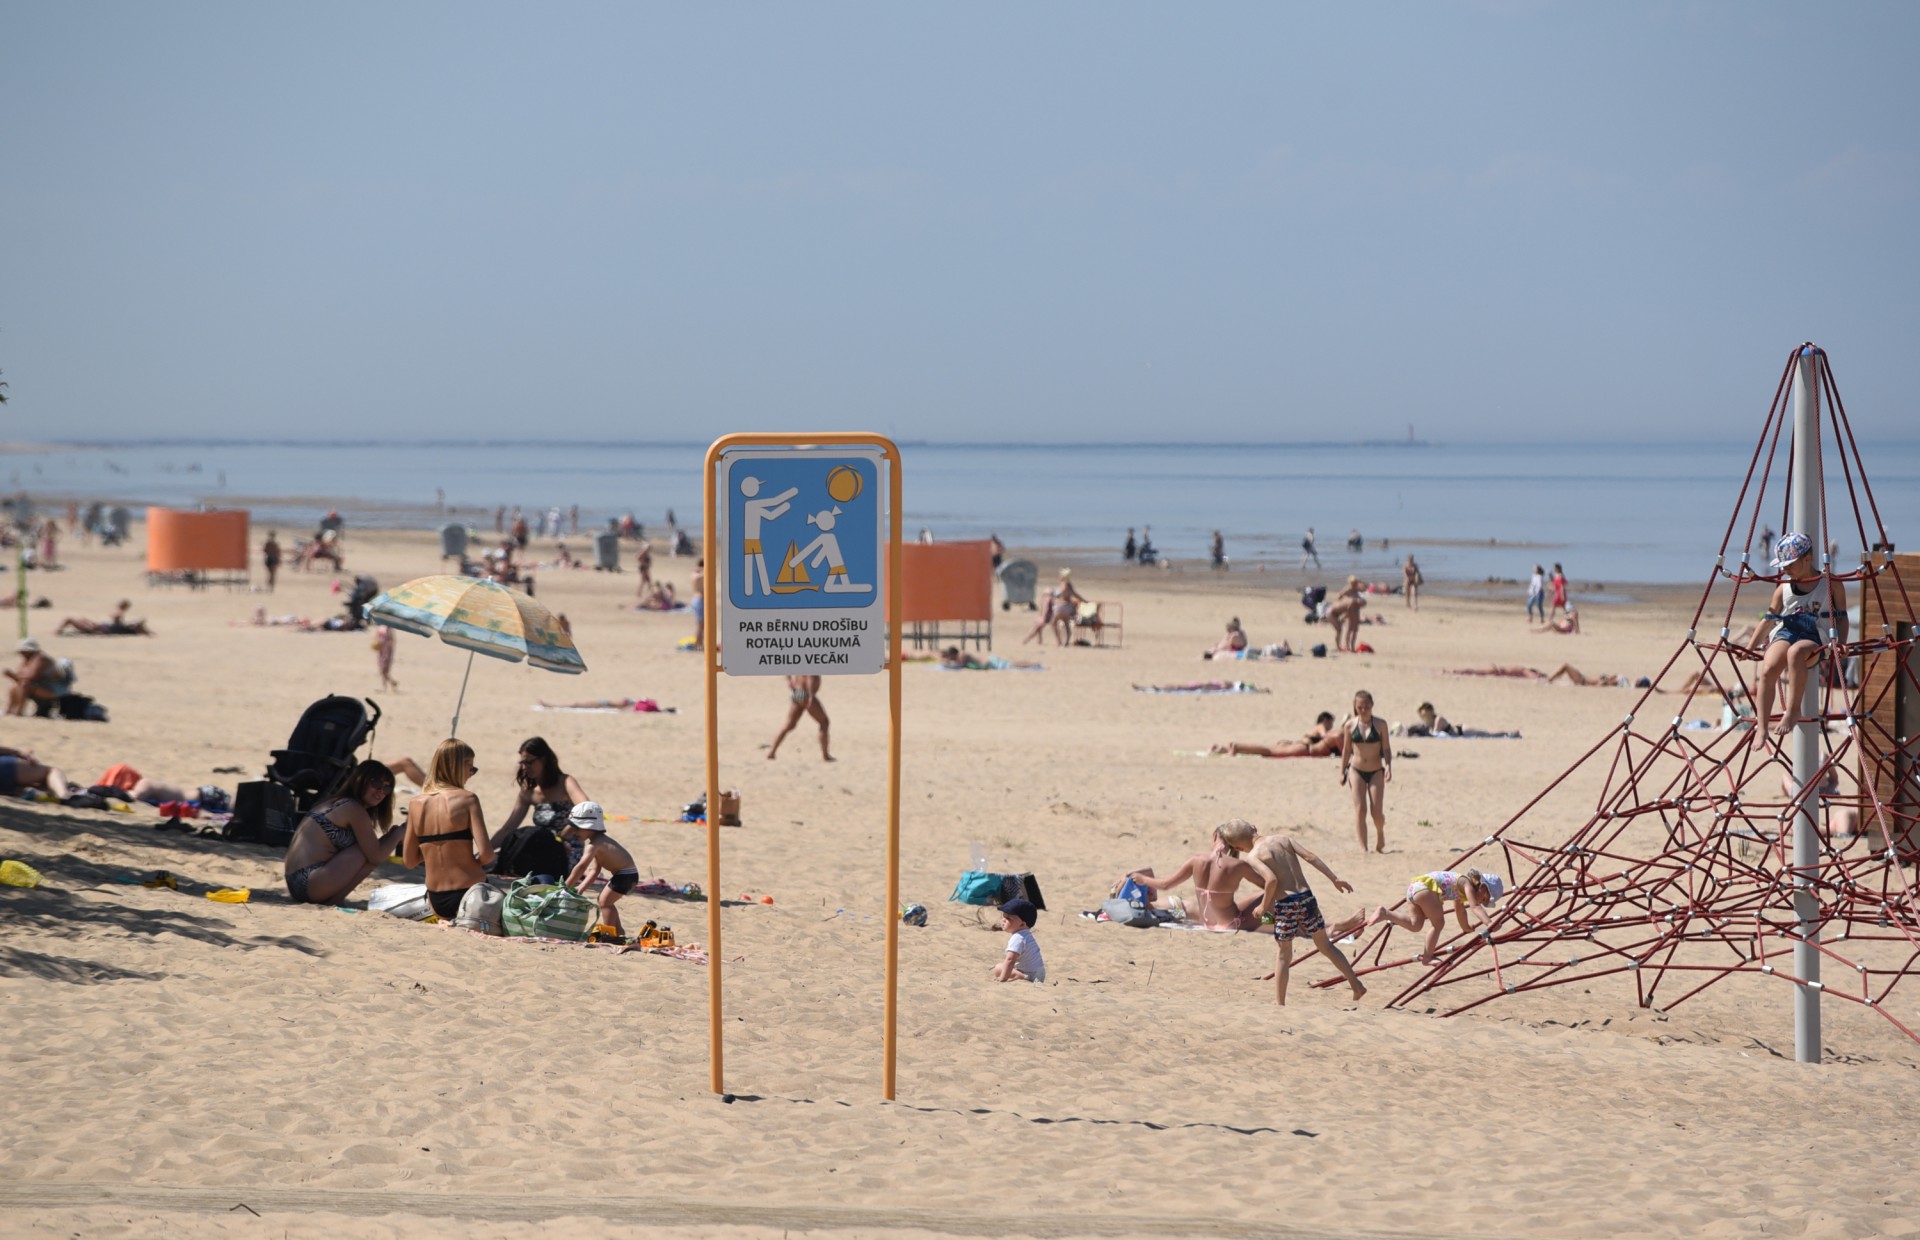 Blakus nūdistu pludmalei! Vecāķu peldvietā svinīgi pacelts Zilais karogs (Bilde 1)